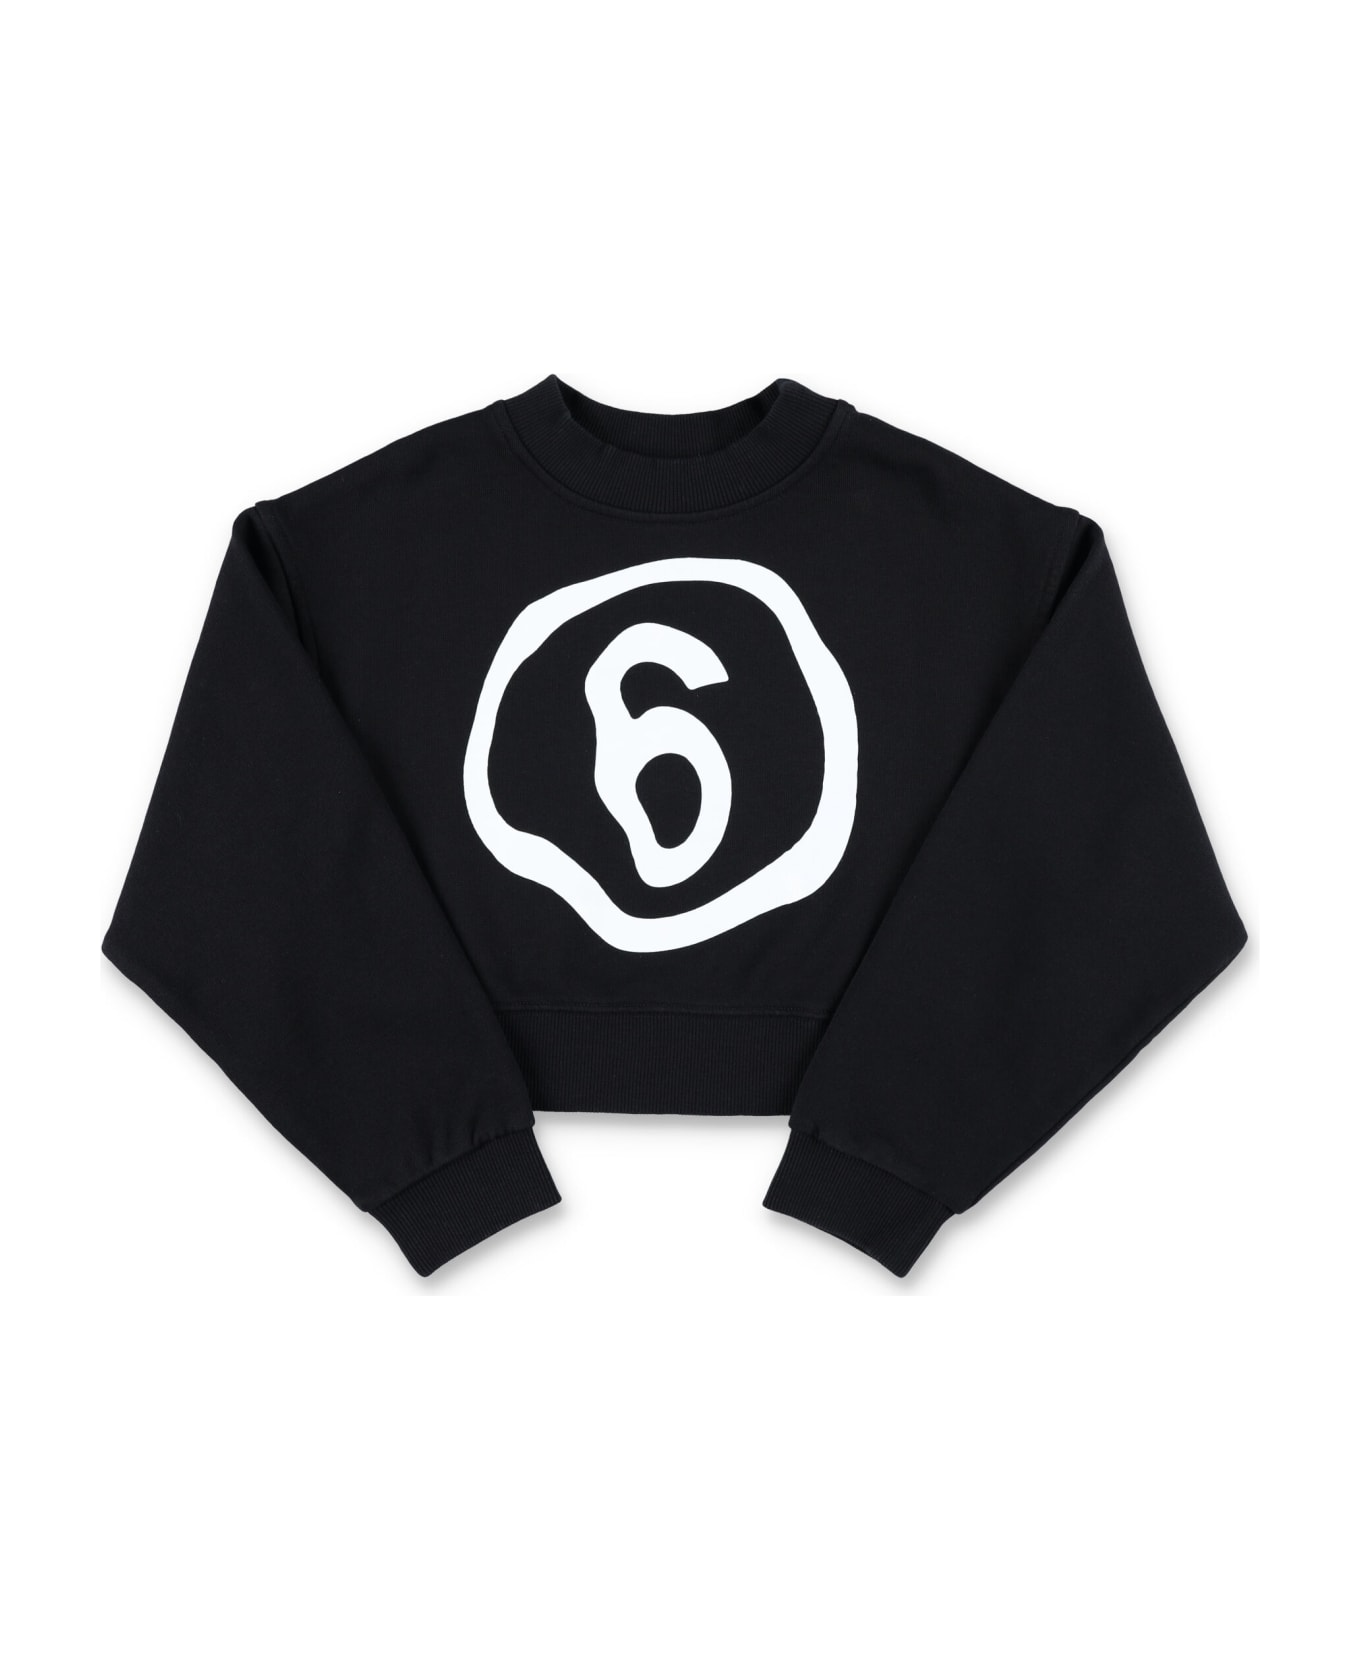 MM6 Maison Margiela Cropped Sweatshirt - BLACK